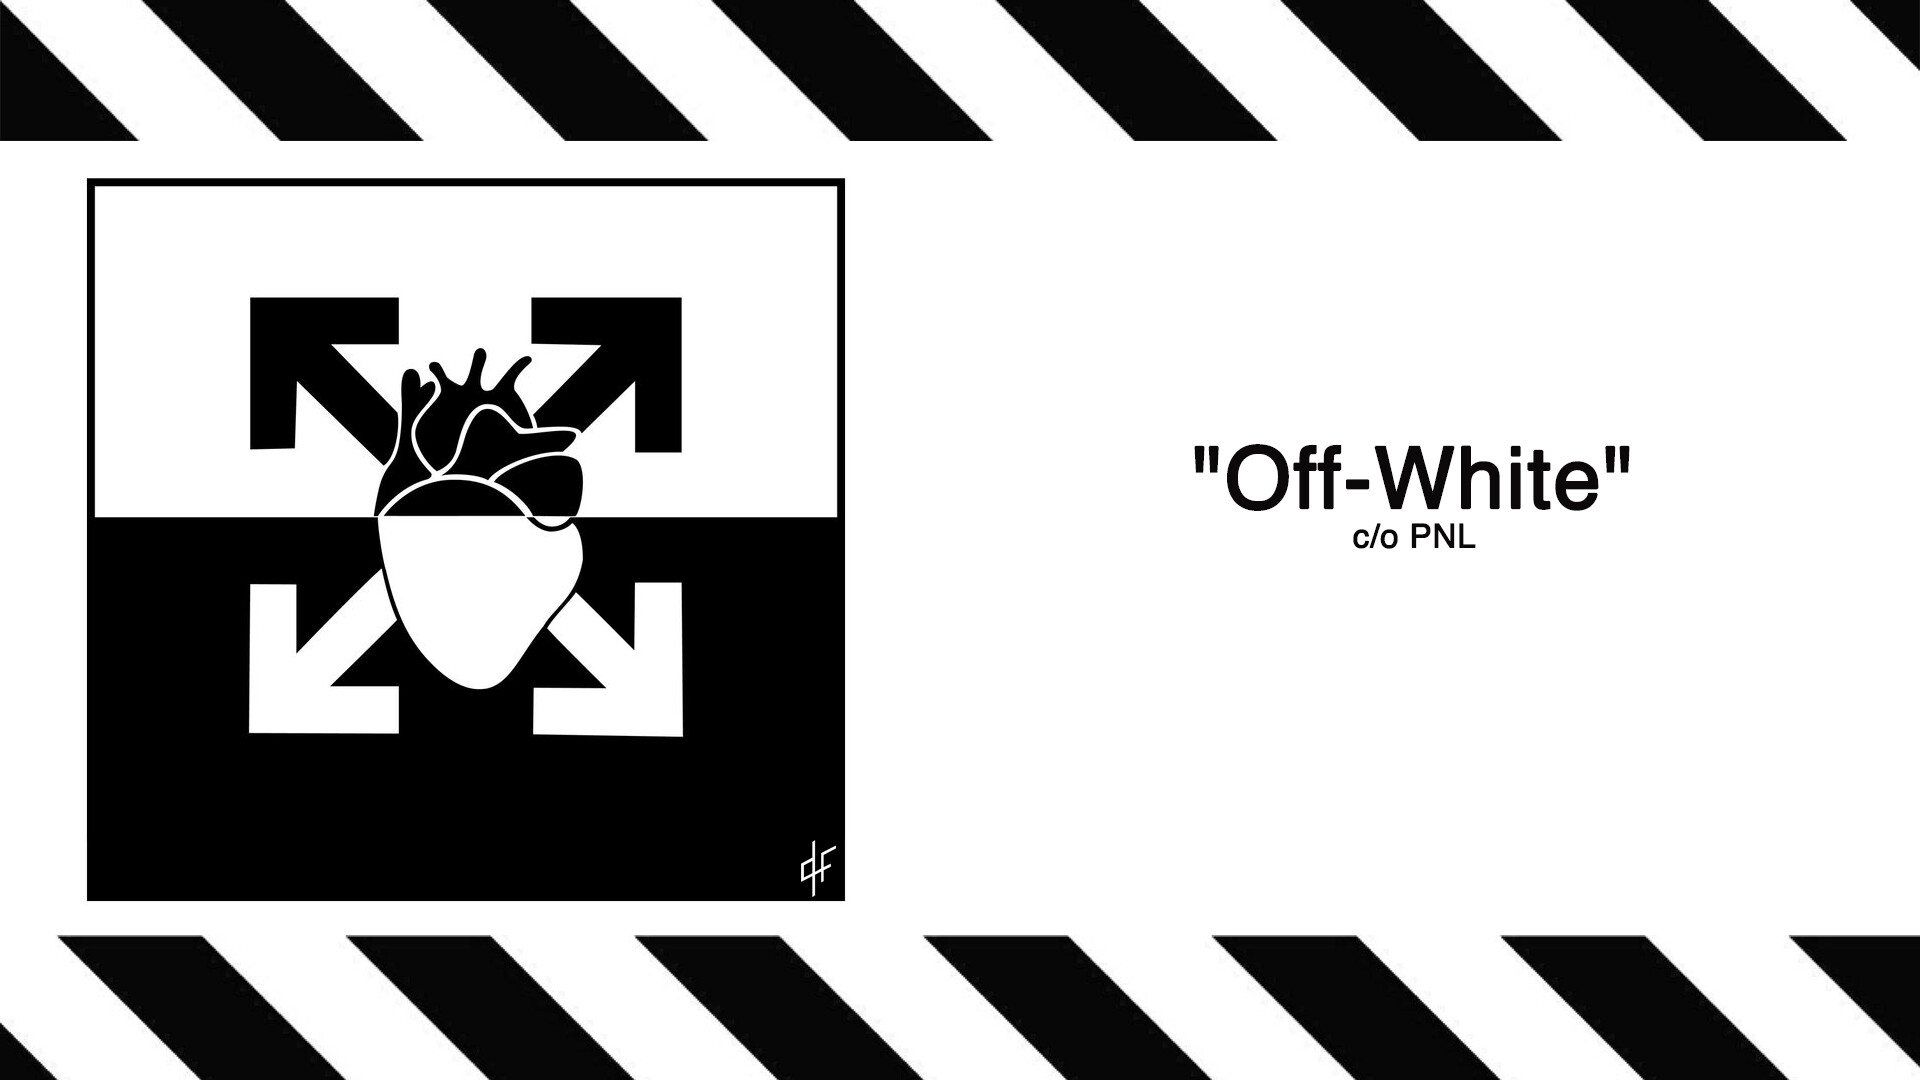 Off-White: Streetwear label, Monochrome. 1920x1080 Full HD Wallpaper.